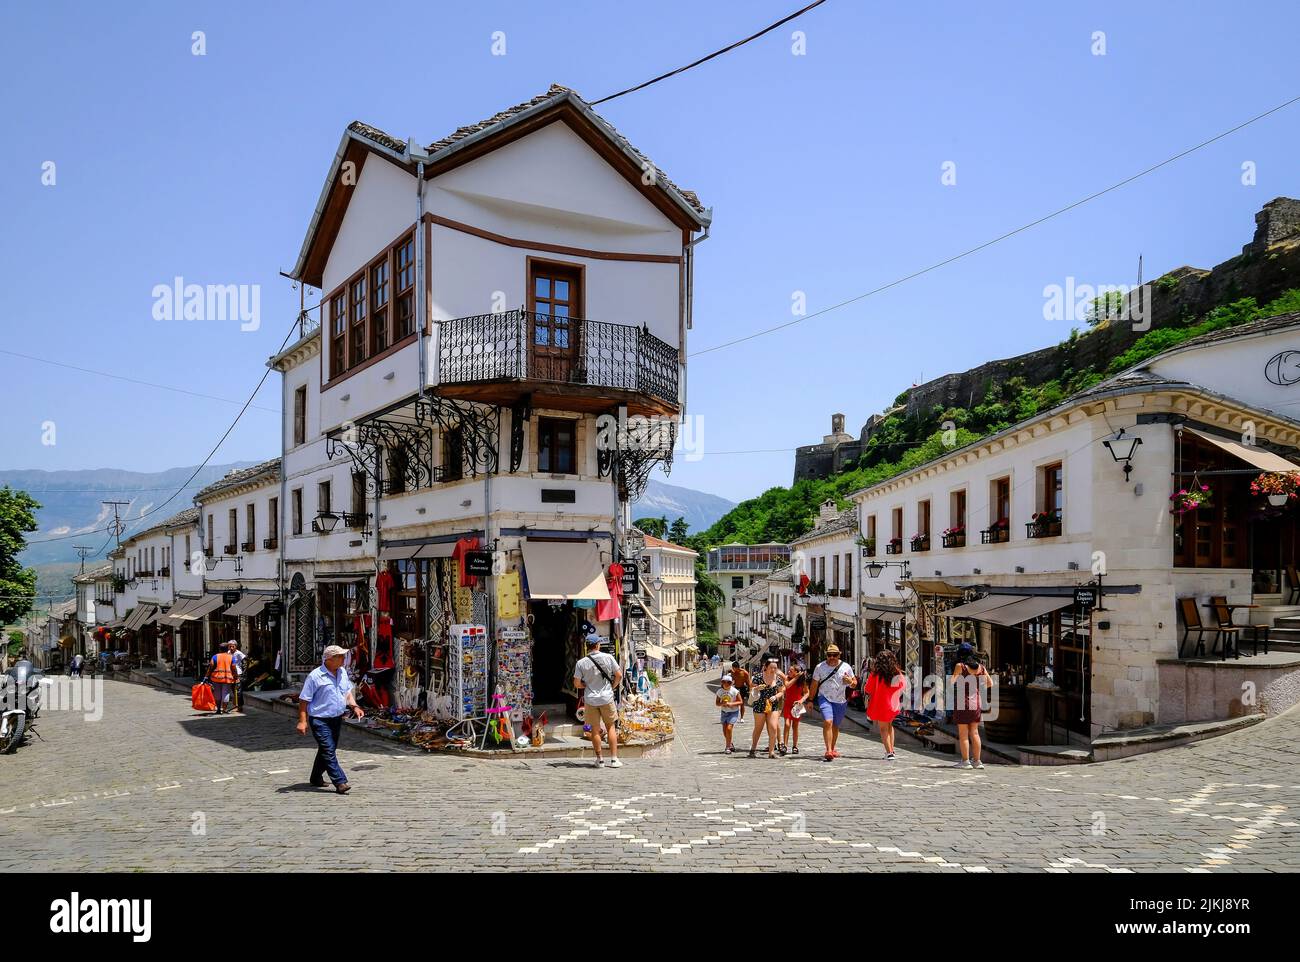 Ciudad de Gjirokastra, Gjirokastra, Albania - Los turistas visitan el casco antiguo histórico de la ciudad de montaña de Gjirokastra, Patrimonio de la Humanidad de la UNESCO. Foto de stock